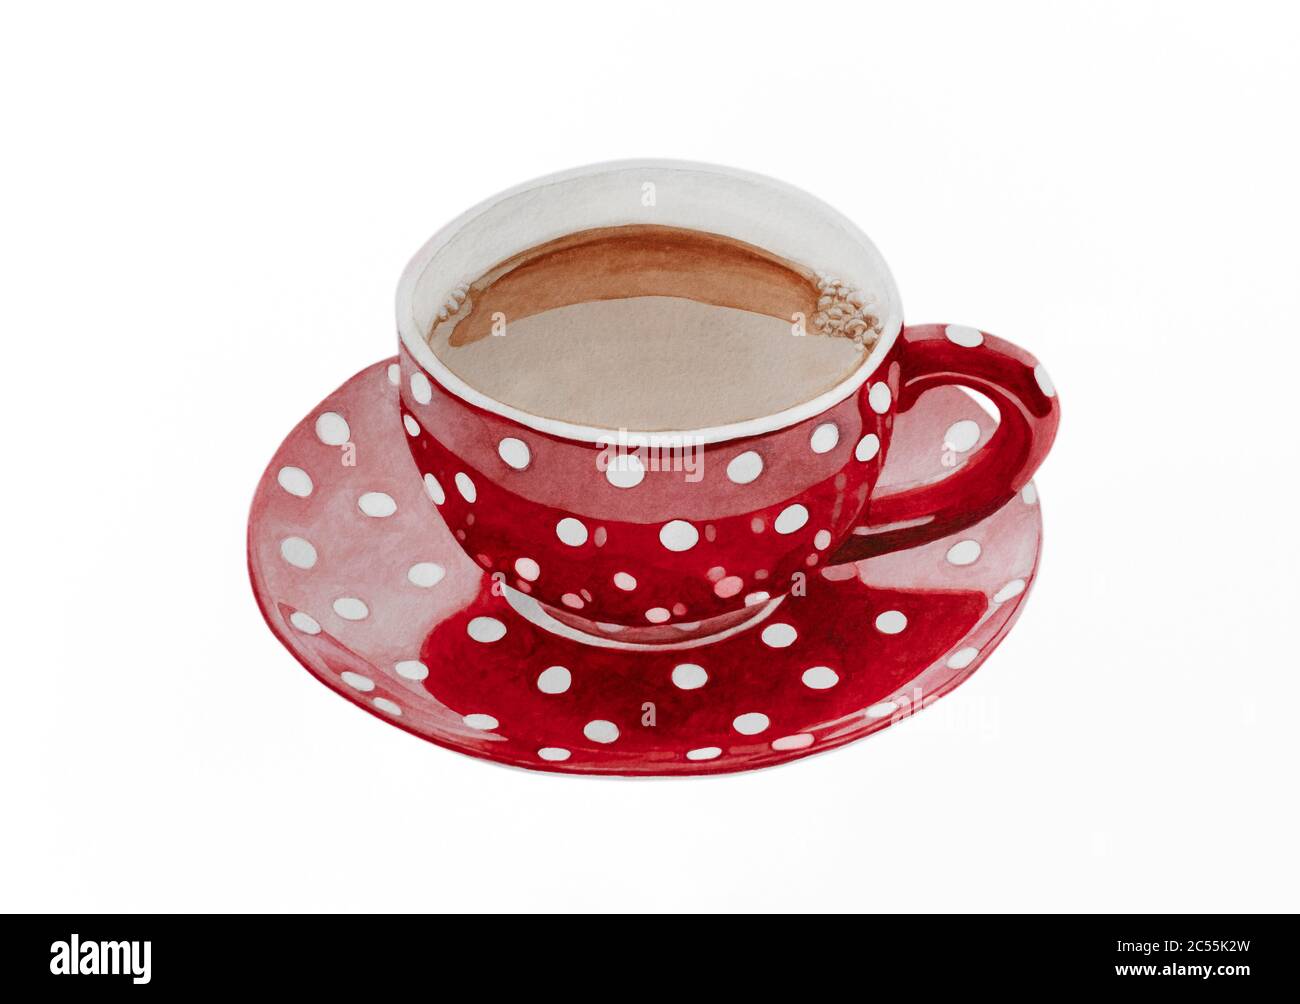 Aquarell Illustration einer Tasse Kaffee in einer rot gepunkteten Tasse Stockfoto